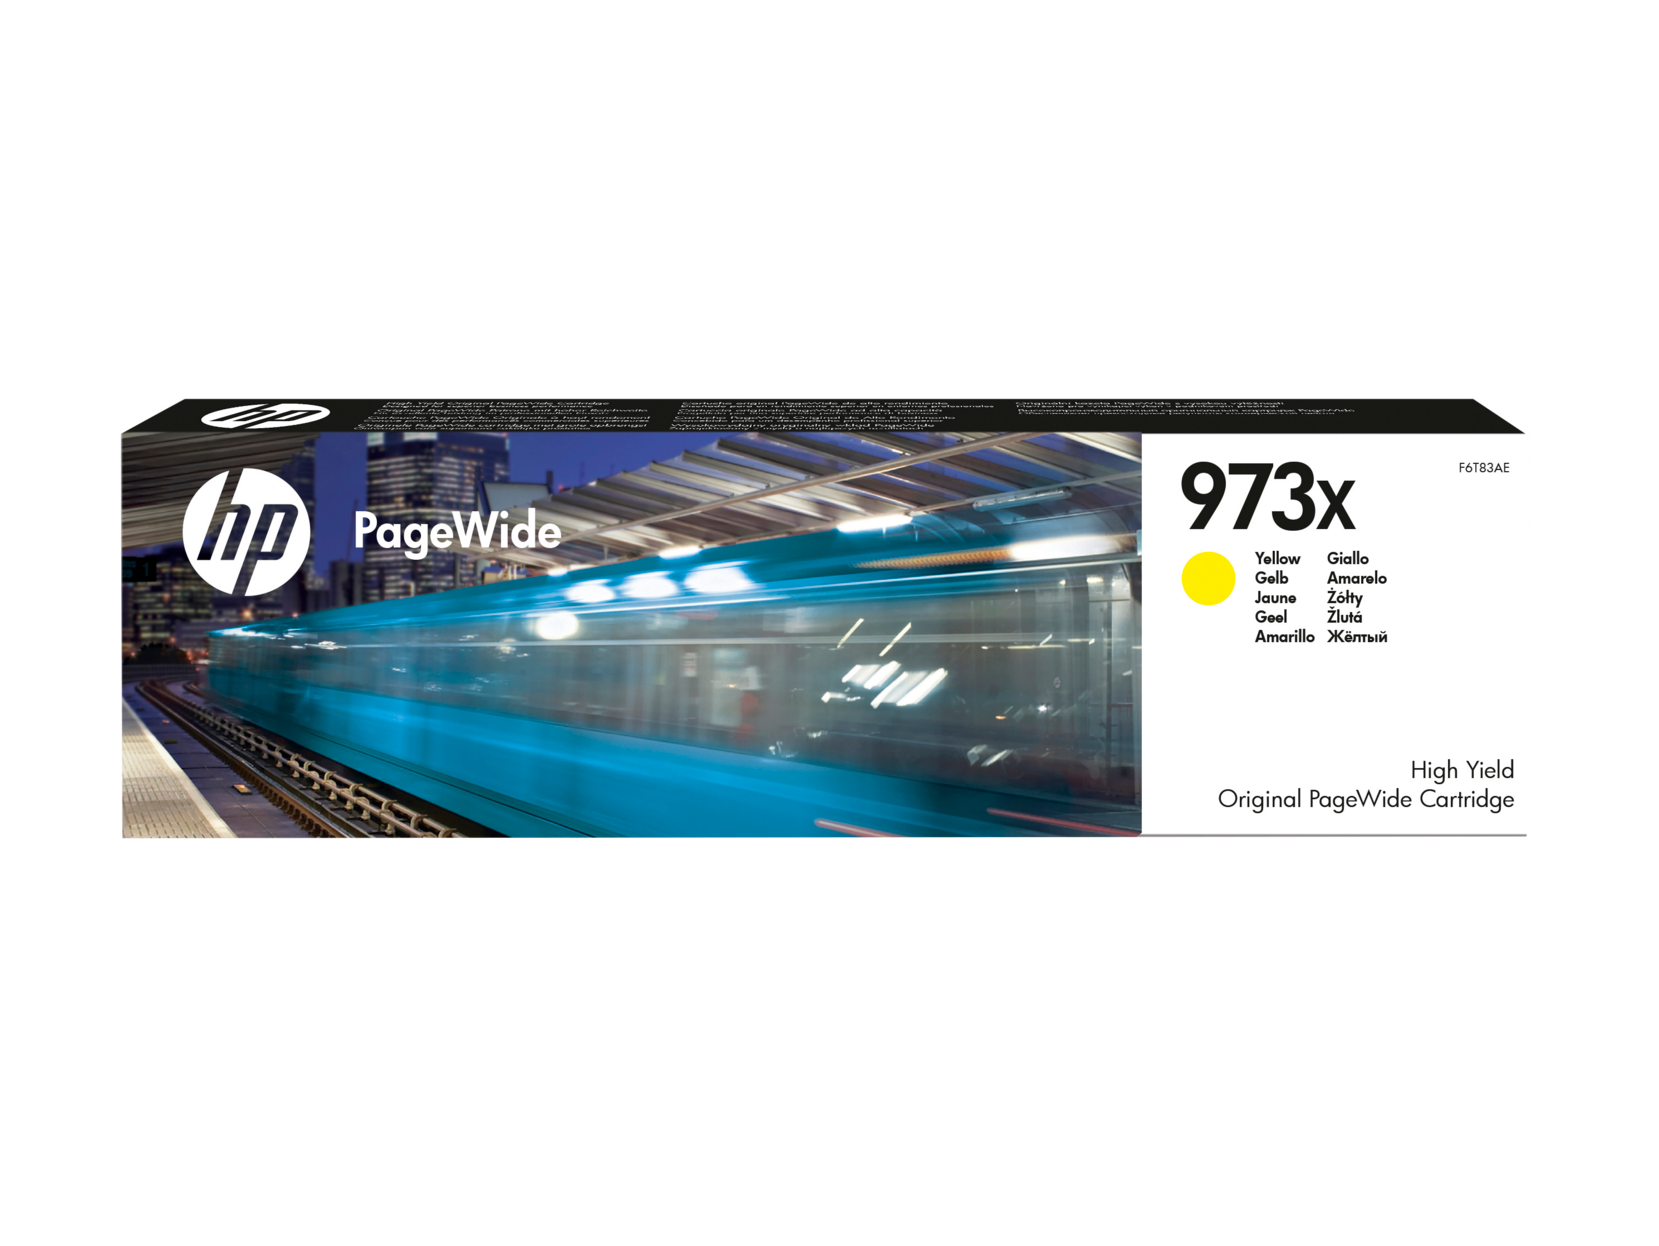 Картридж для печати HP Картридж HP 973X F6T83AE вид печати струйный, цвет Желтый, емкость 86мл.